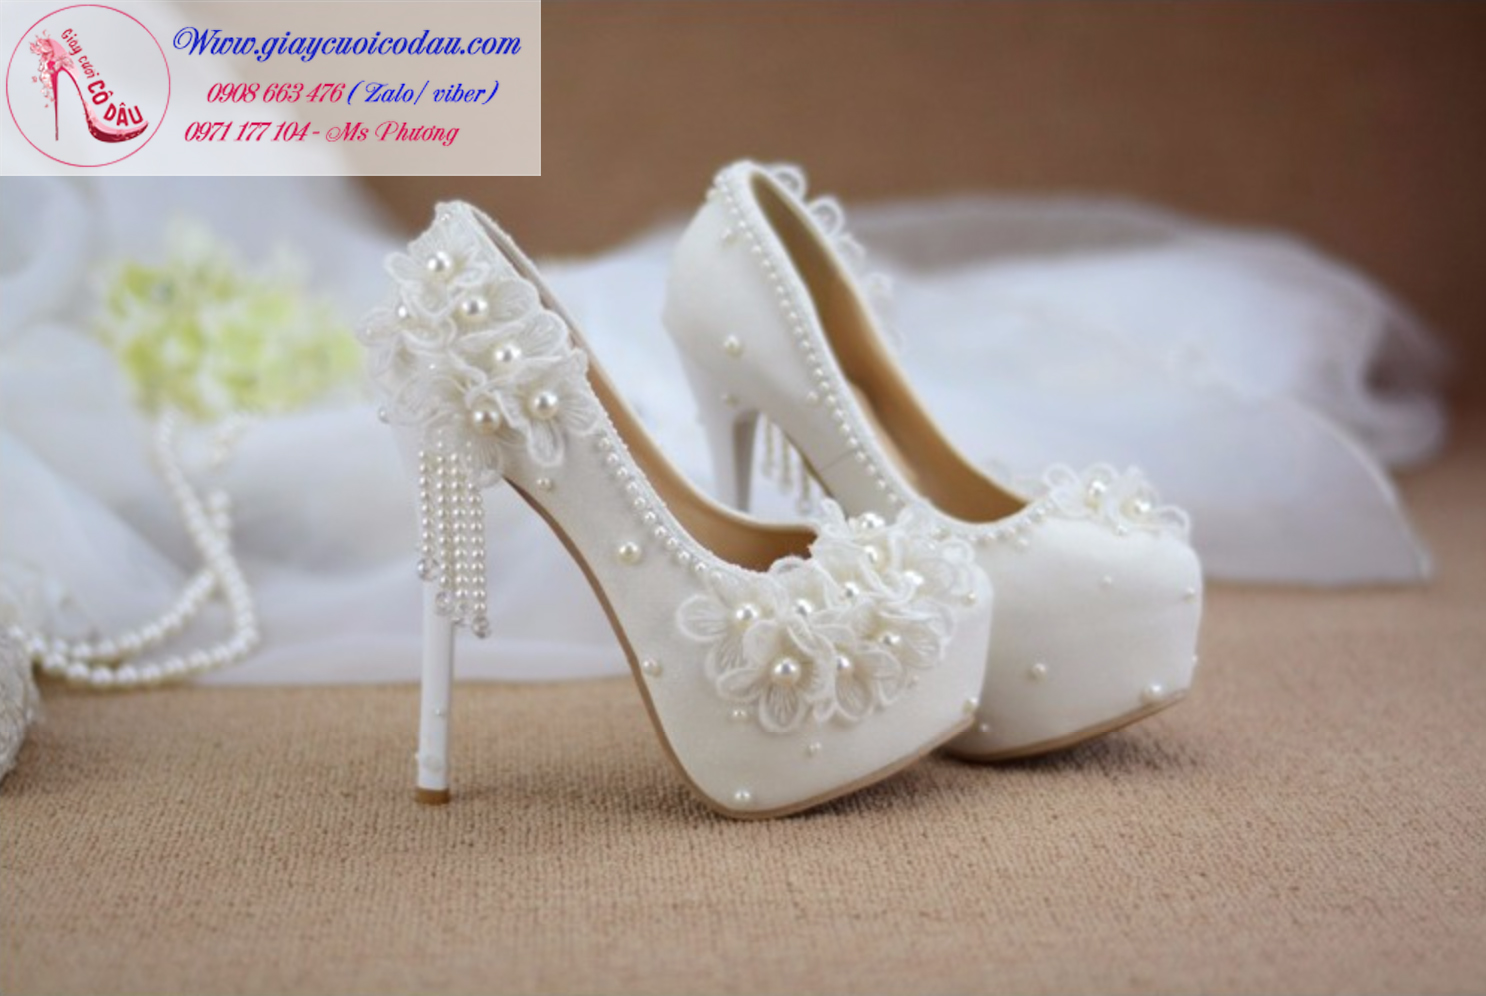 Luôn có đa dạng các mẫu giày cưới bạn dễ dàng chọn lựa được mẫu giày cưới ưng ý nhất!